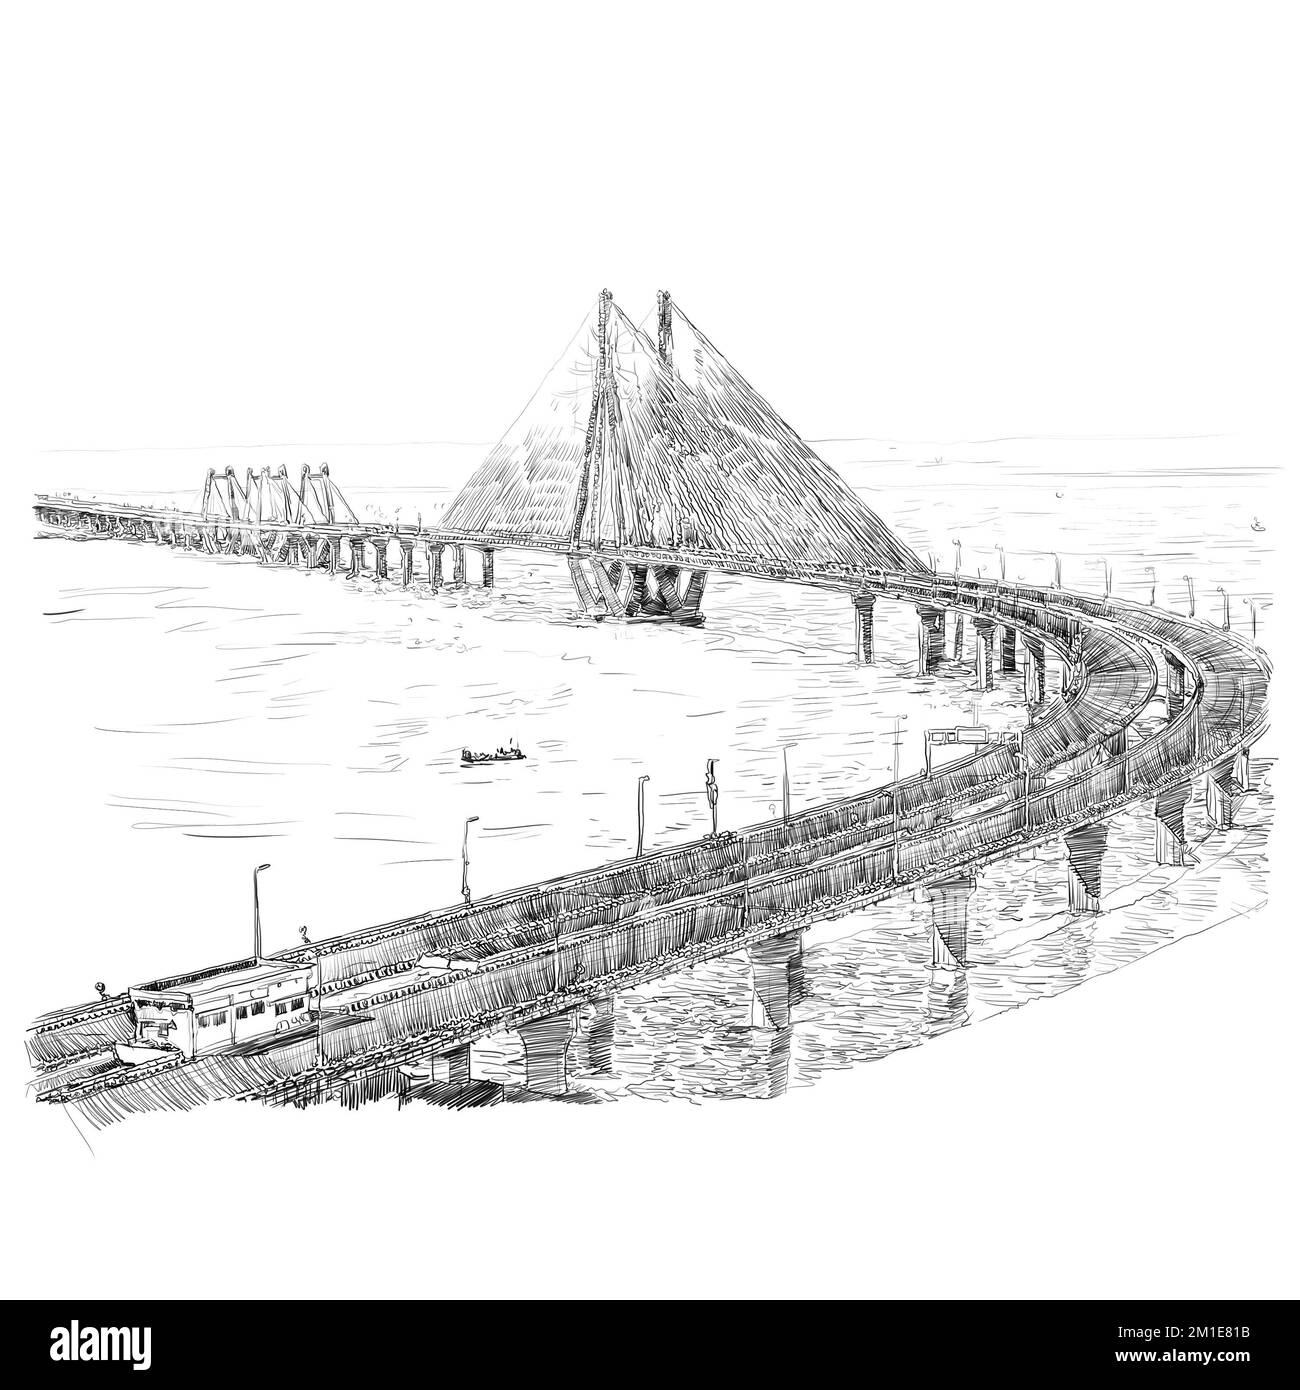 Bandra- Worli Sea Link (Rajiv Gandhi Sea Link), pont de voiture à câbles à Mumbai (Bombay), Inde. Croquis du paysage urbain. Art voyage Les arts vintage Banque D'Images